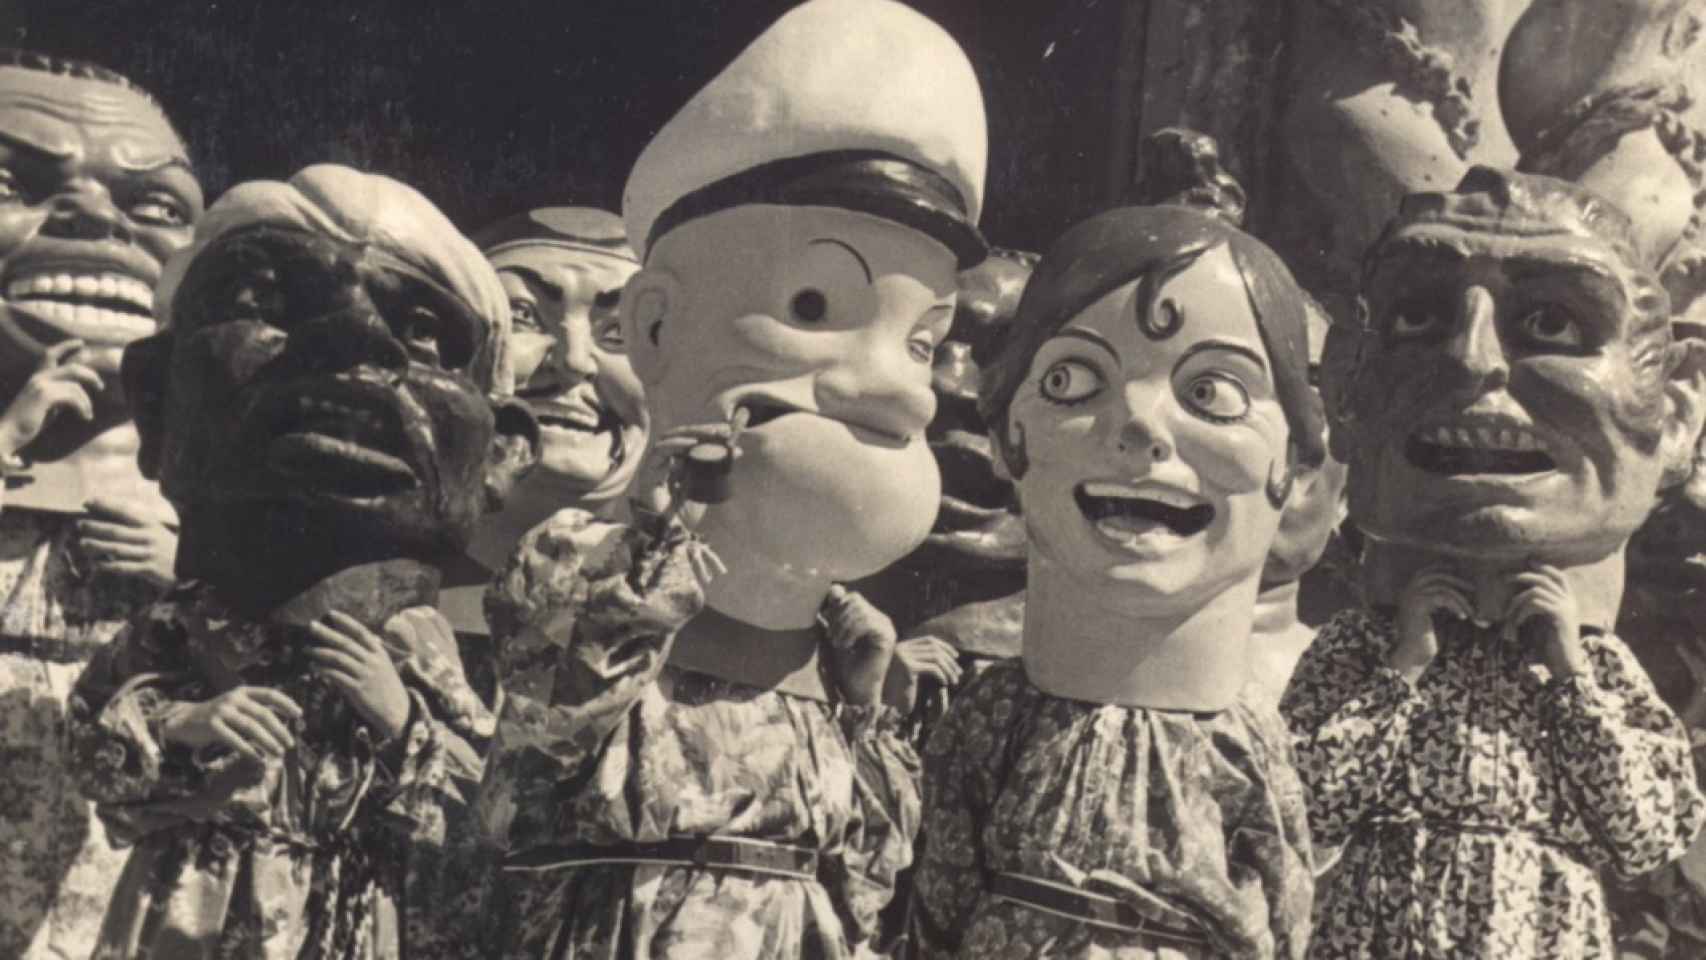 En 1947, los cabezudos reproducían los estereotipos de la época para sorprender y divertir al público.